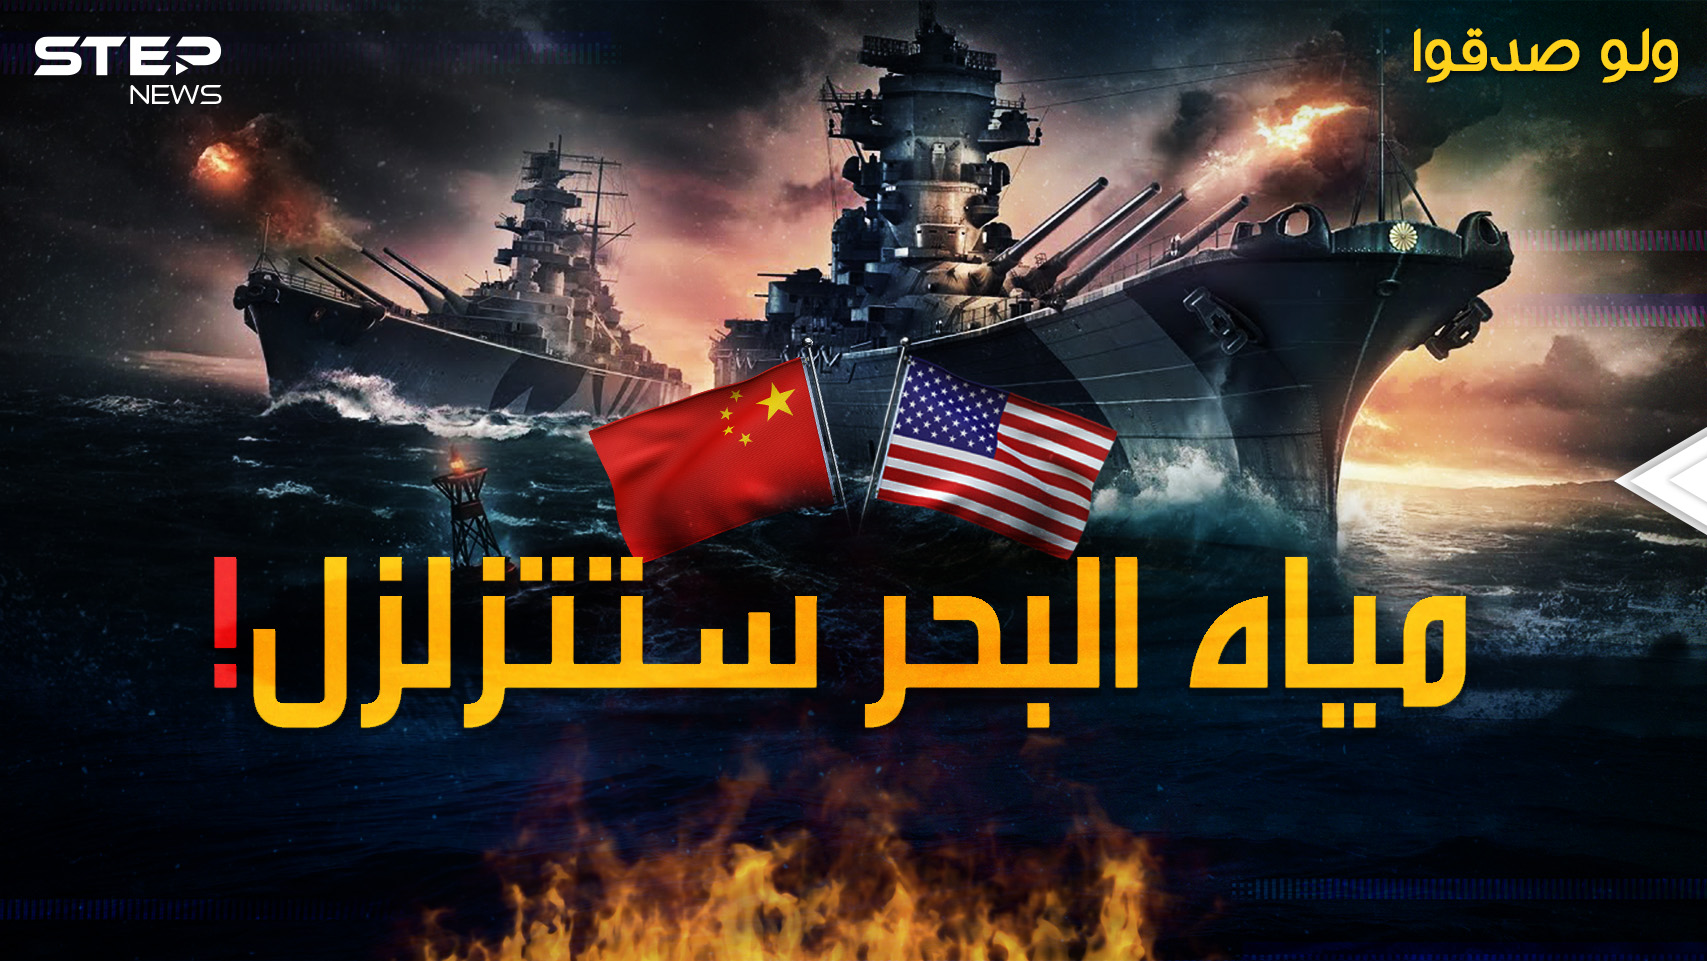 المعركة البحرية الكبرى بحرب تايوان المقبلة..من سينتصر أمريكا أم الصين!